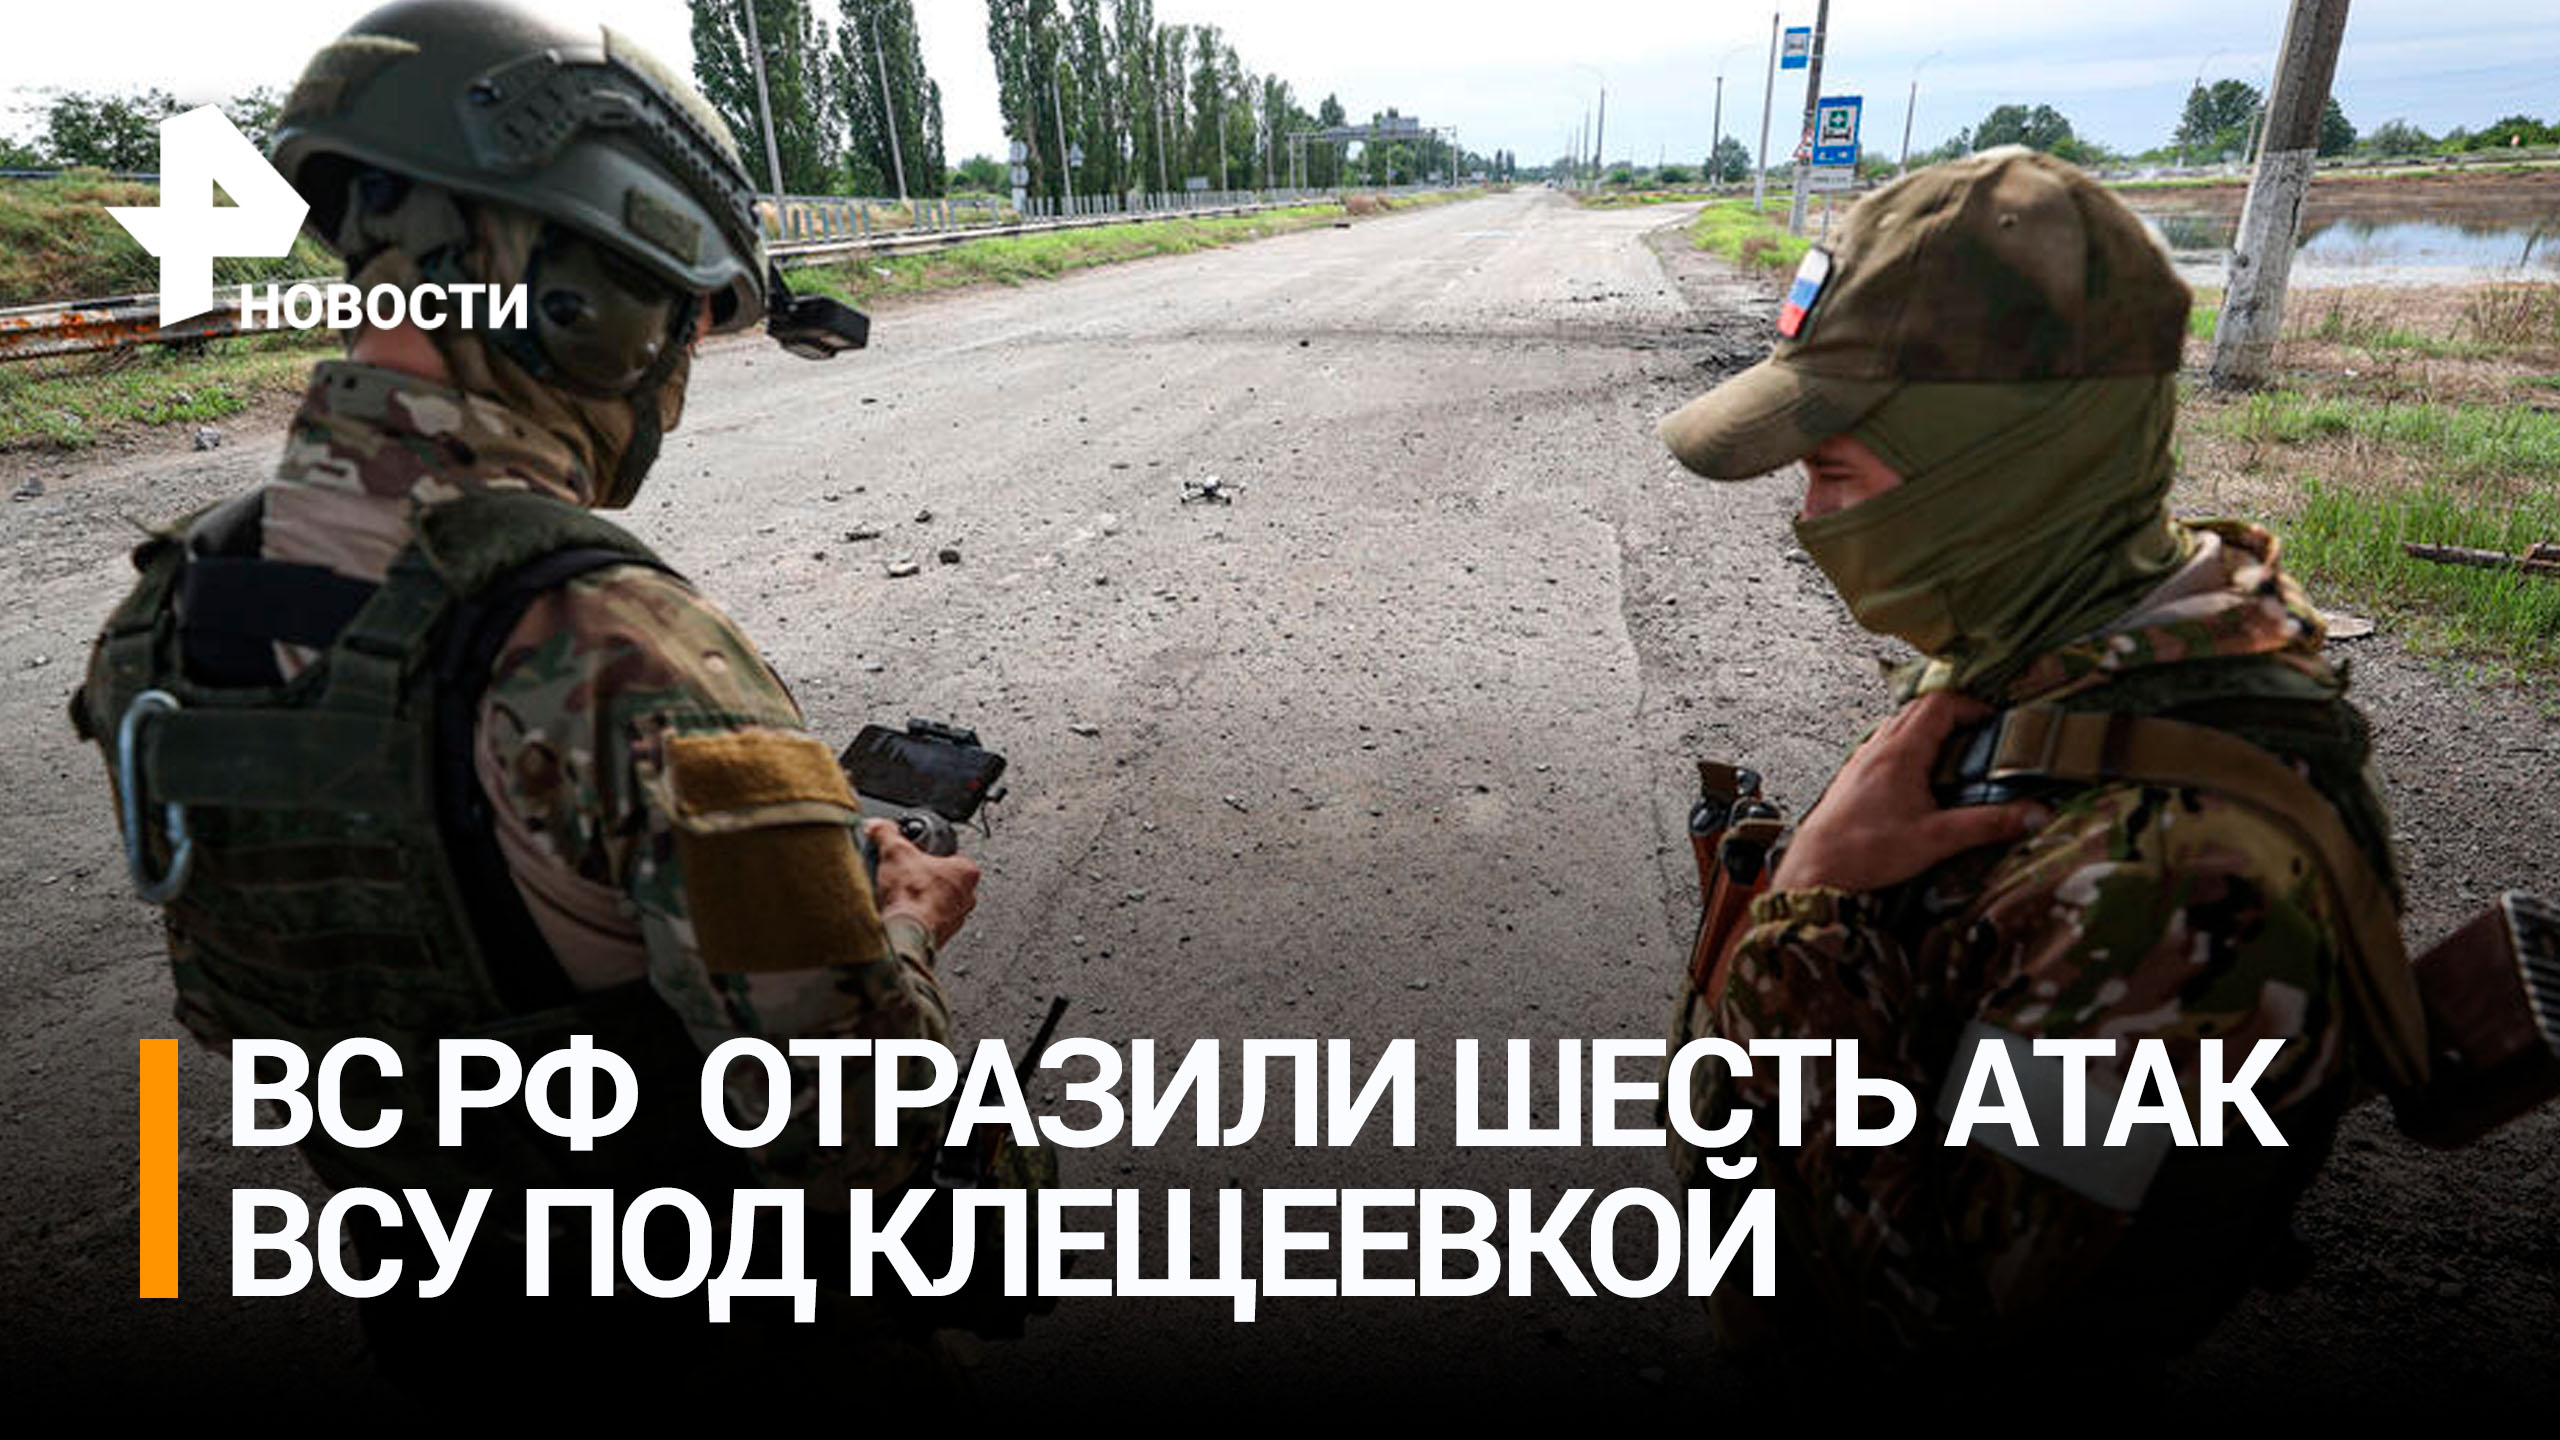 Российские войска за недели отразили шесть атак ВСУ под Клещеевкой / РЕН Новости